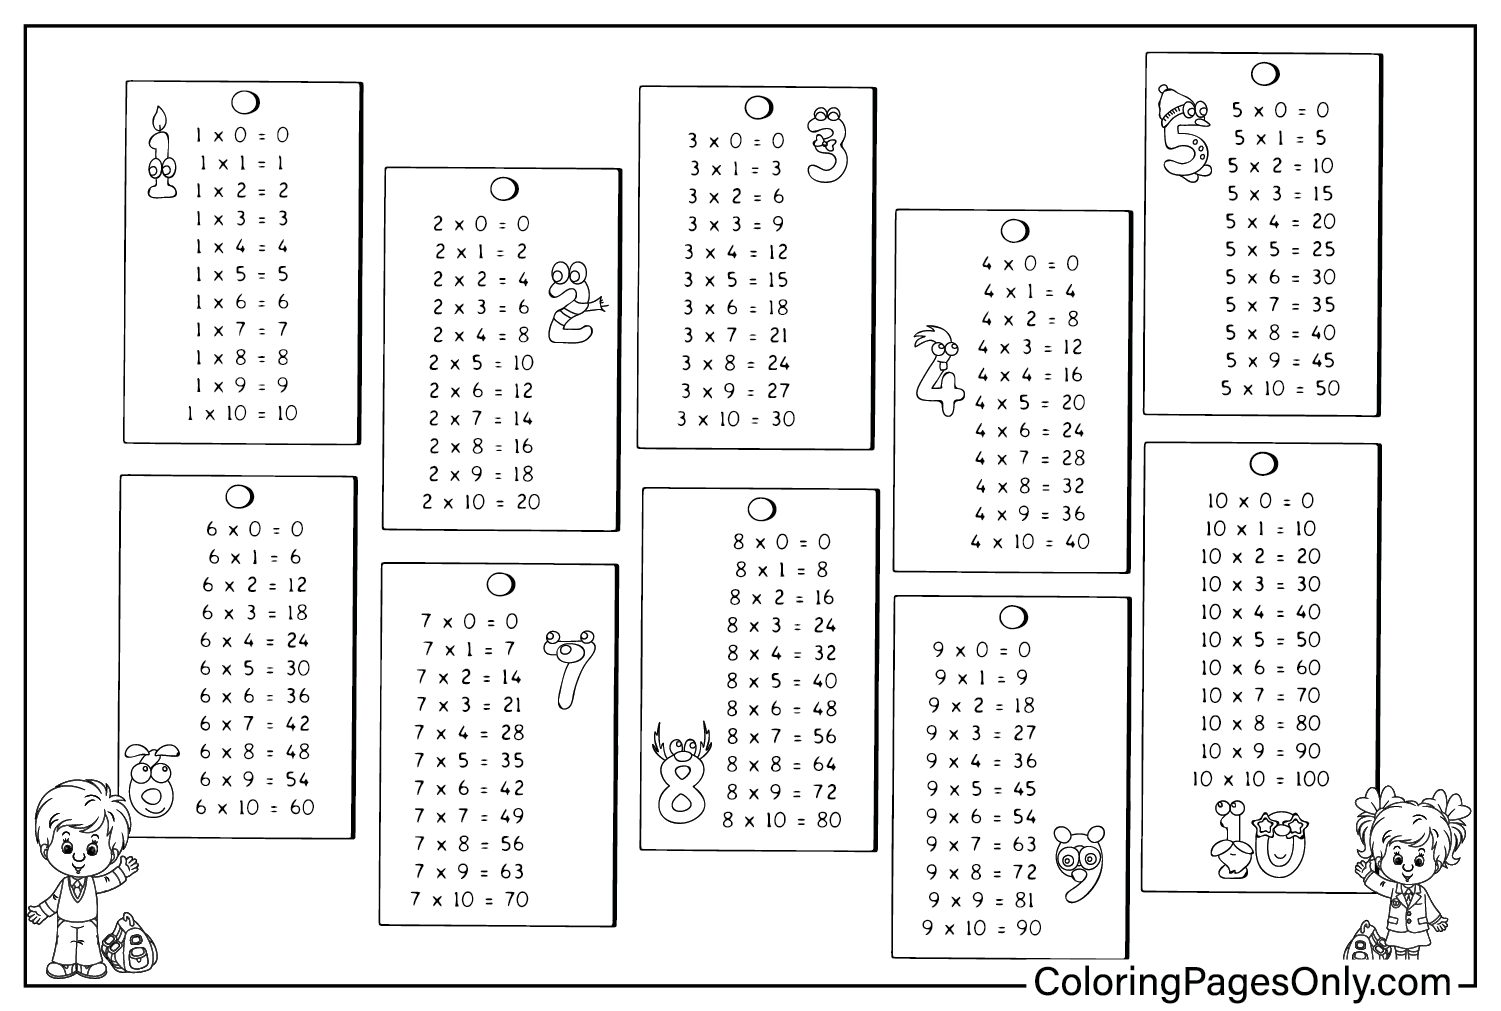 Feuille de coloriage du tableau de multiplication à partir du tableau de multiplication